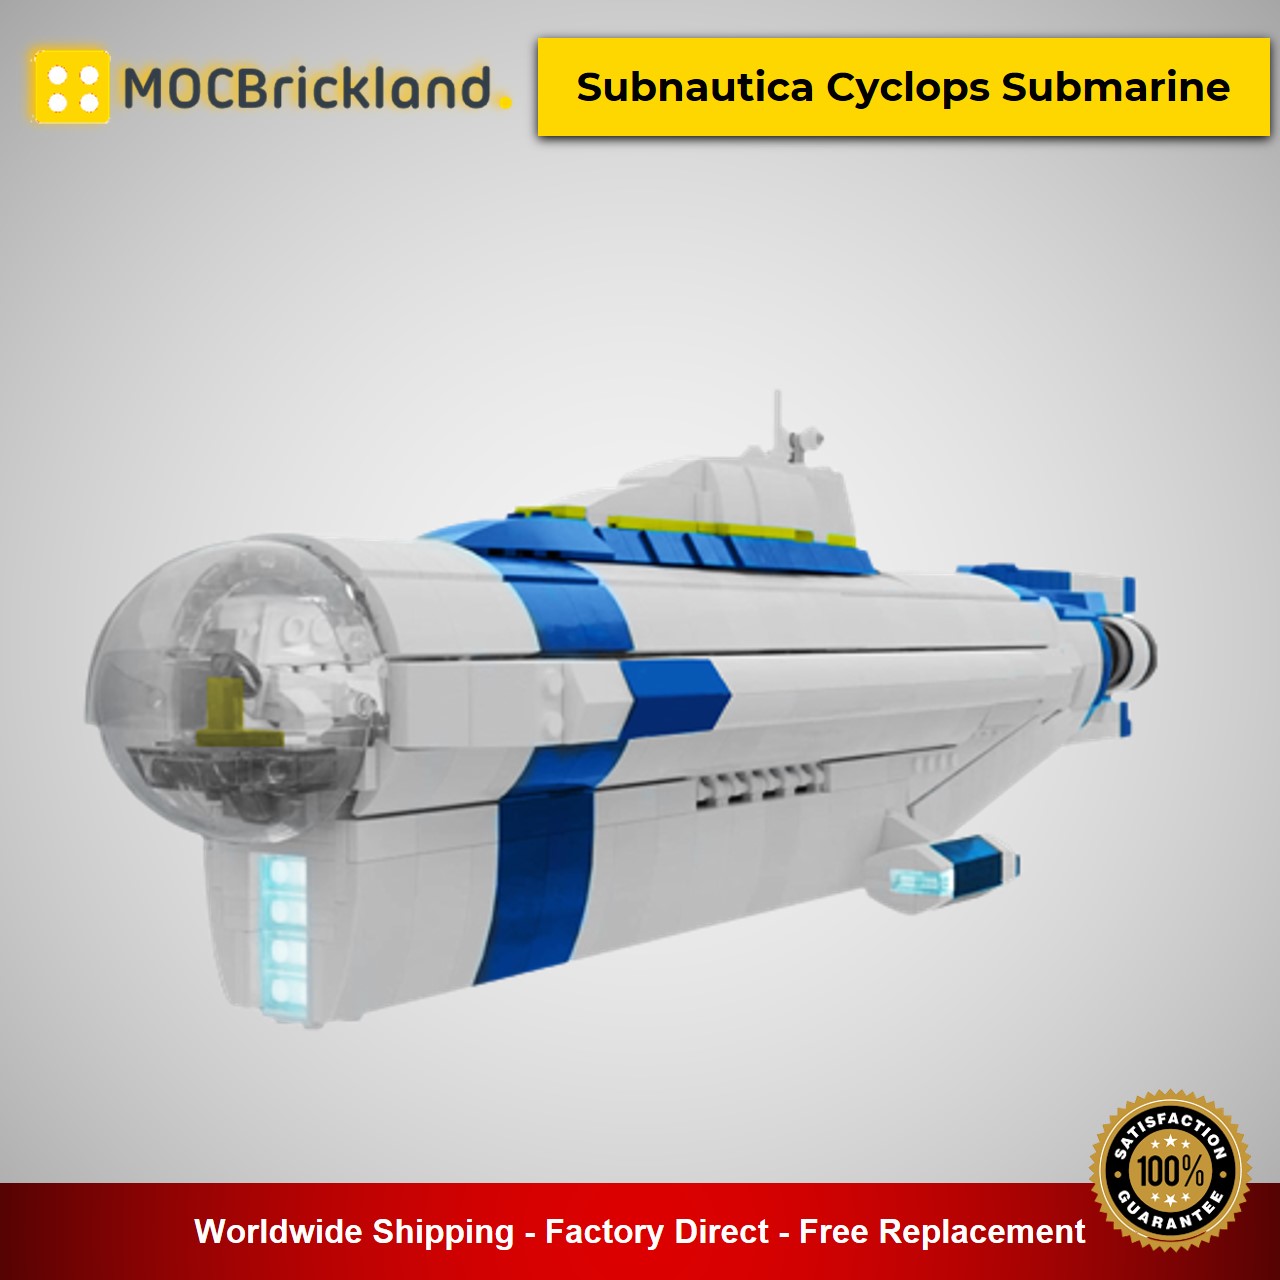 MOCBRICKLAND MOC-14154 Subnautica Cyclops Submarine